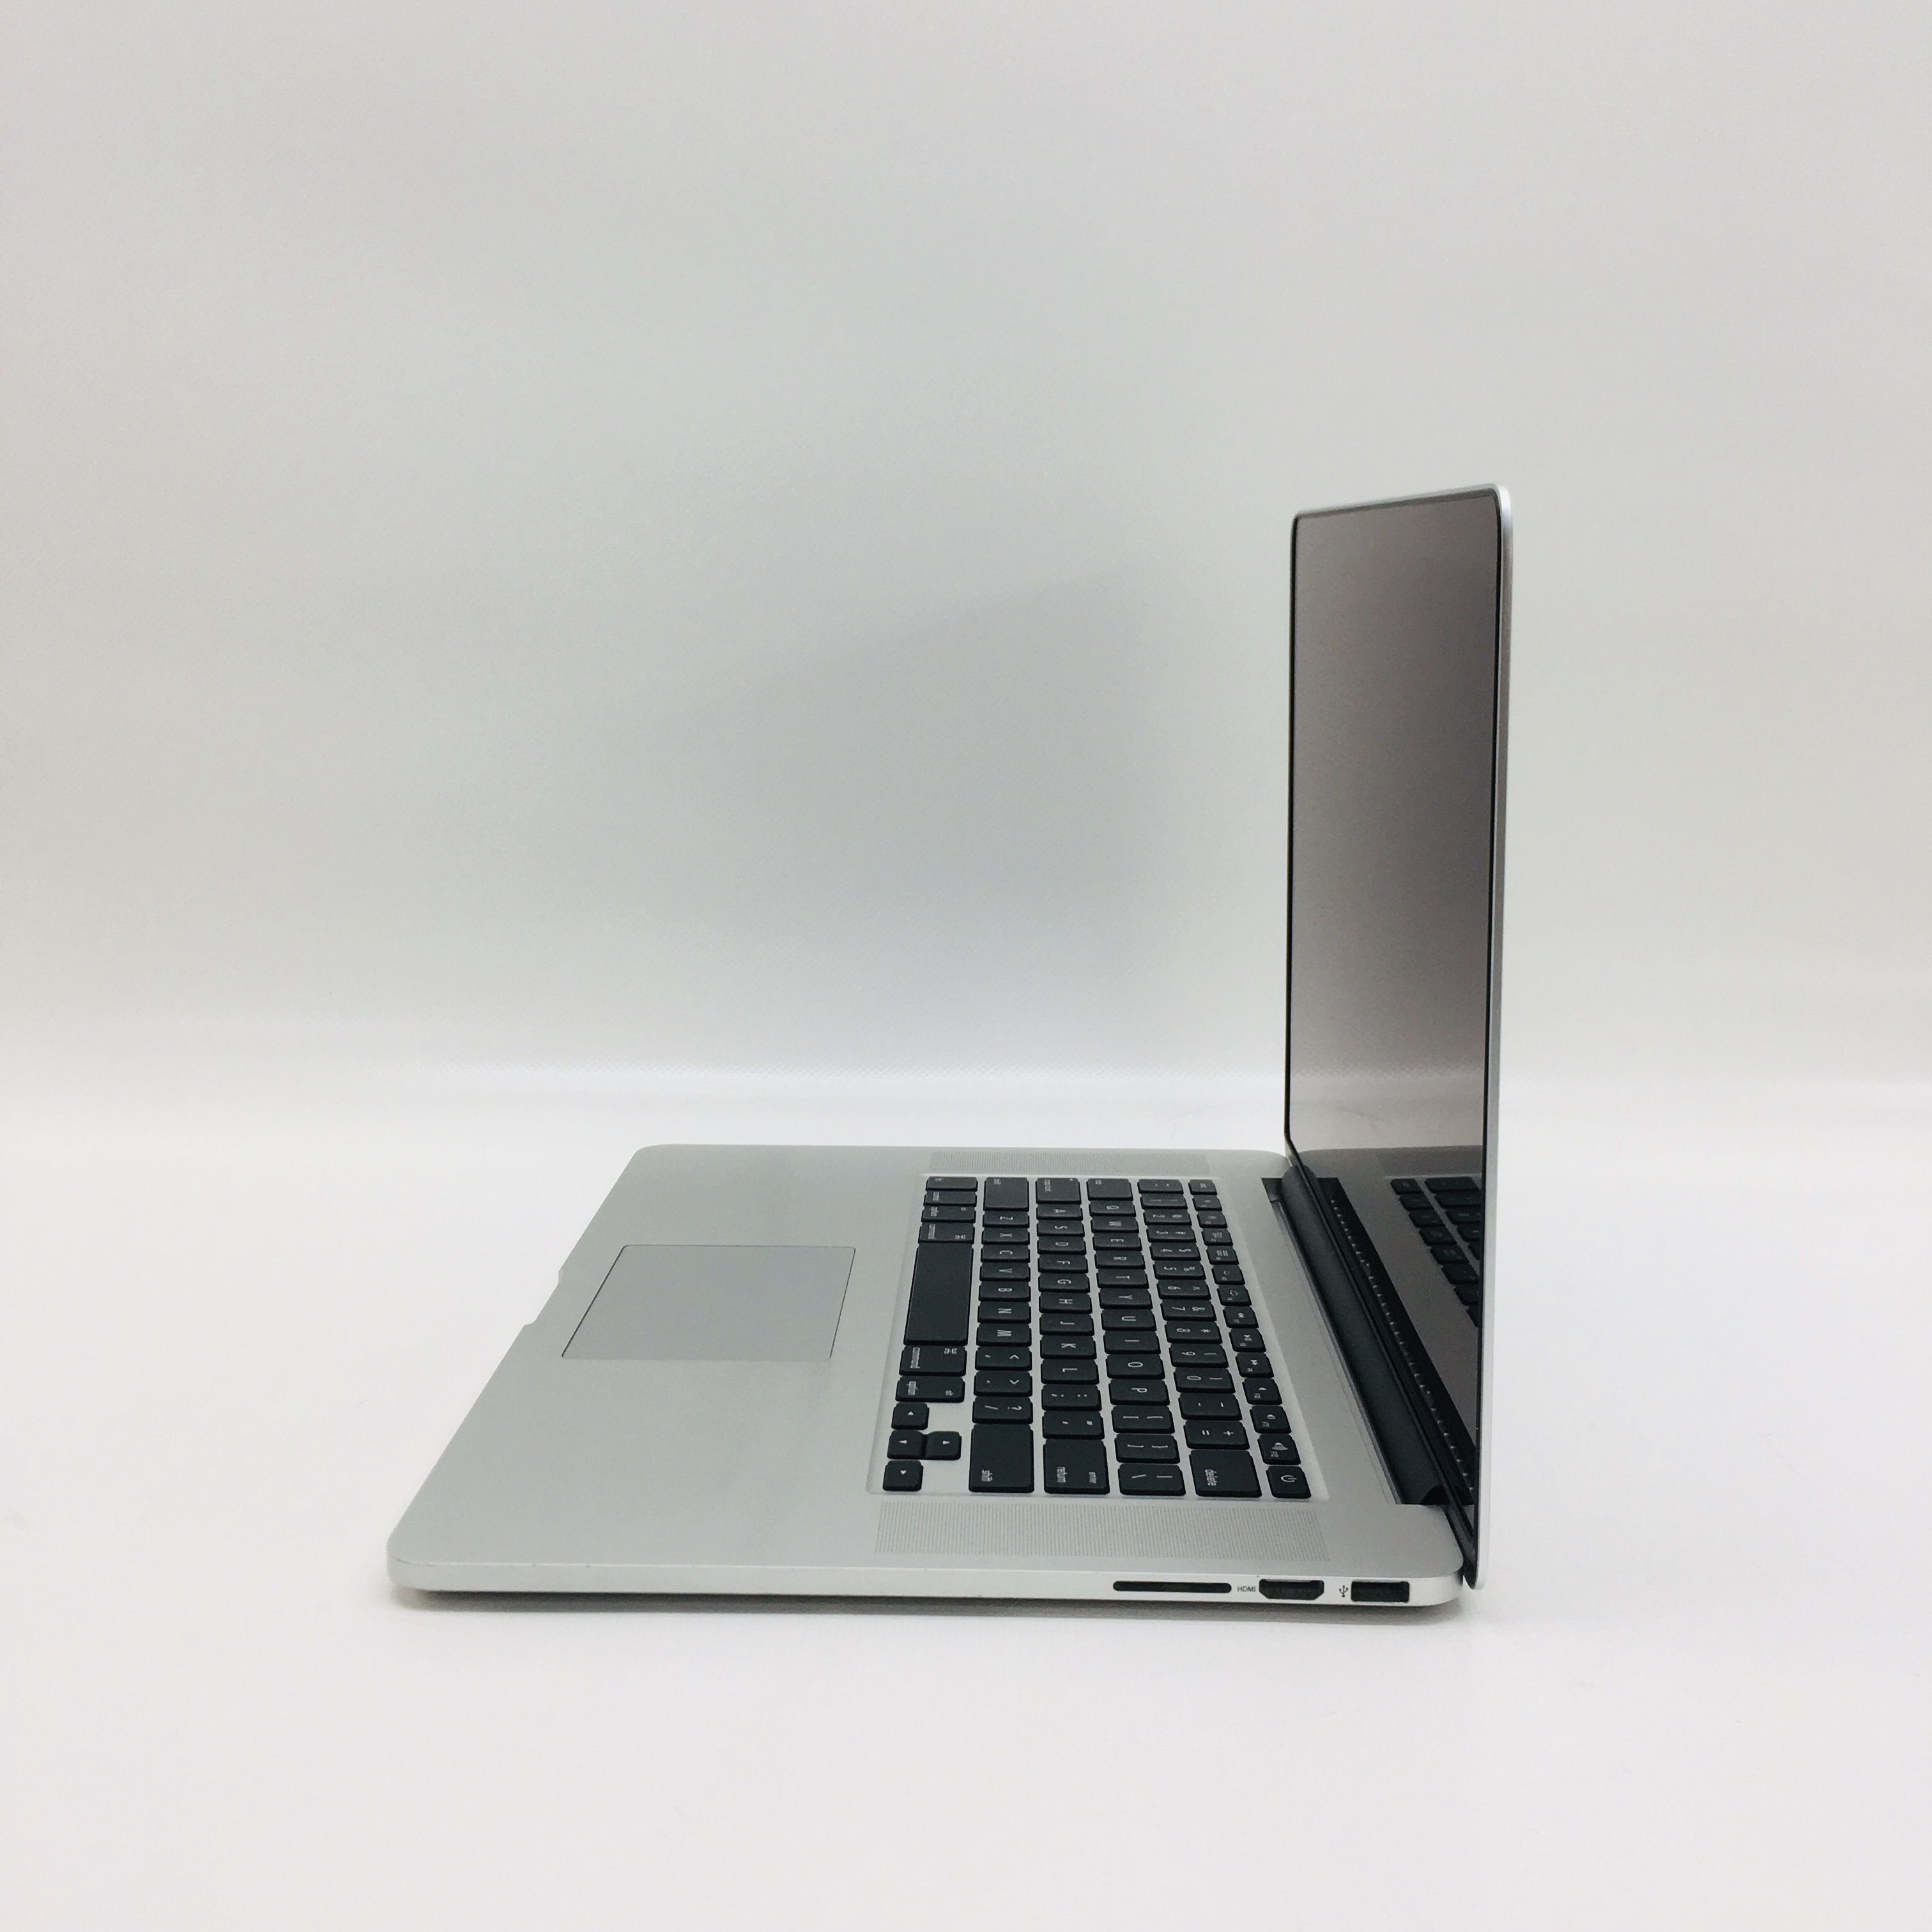 MacBook Pro Retina 15" Mid 2015 (Intel Quad-Core i7 2.5 GHz 16 GB RAM 512 GB SSD), Intel Quad-Core i7 2.5 GHz, 16 GB RAM, 512 GB SSD, image 3